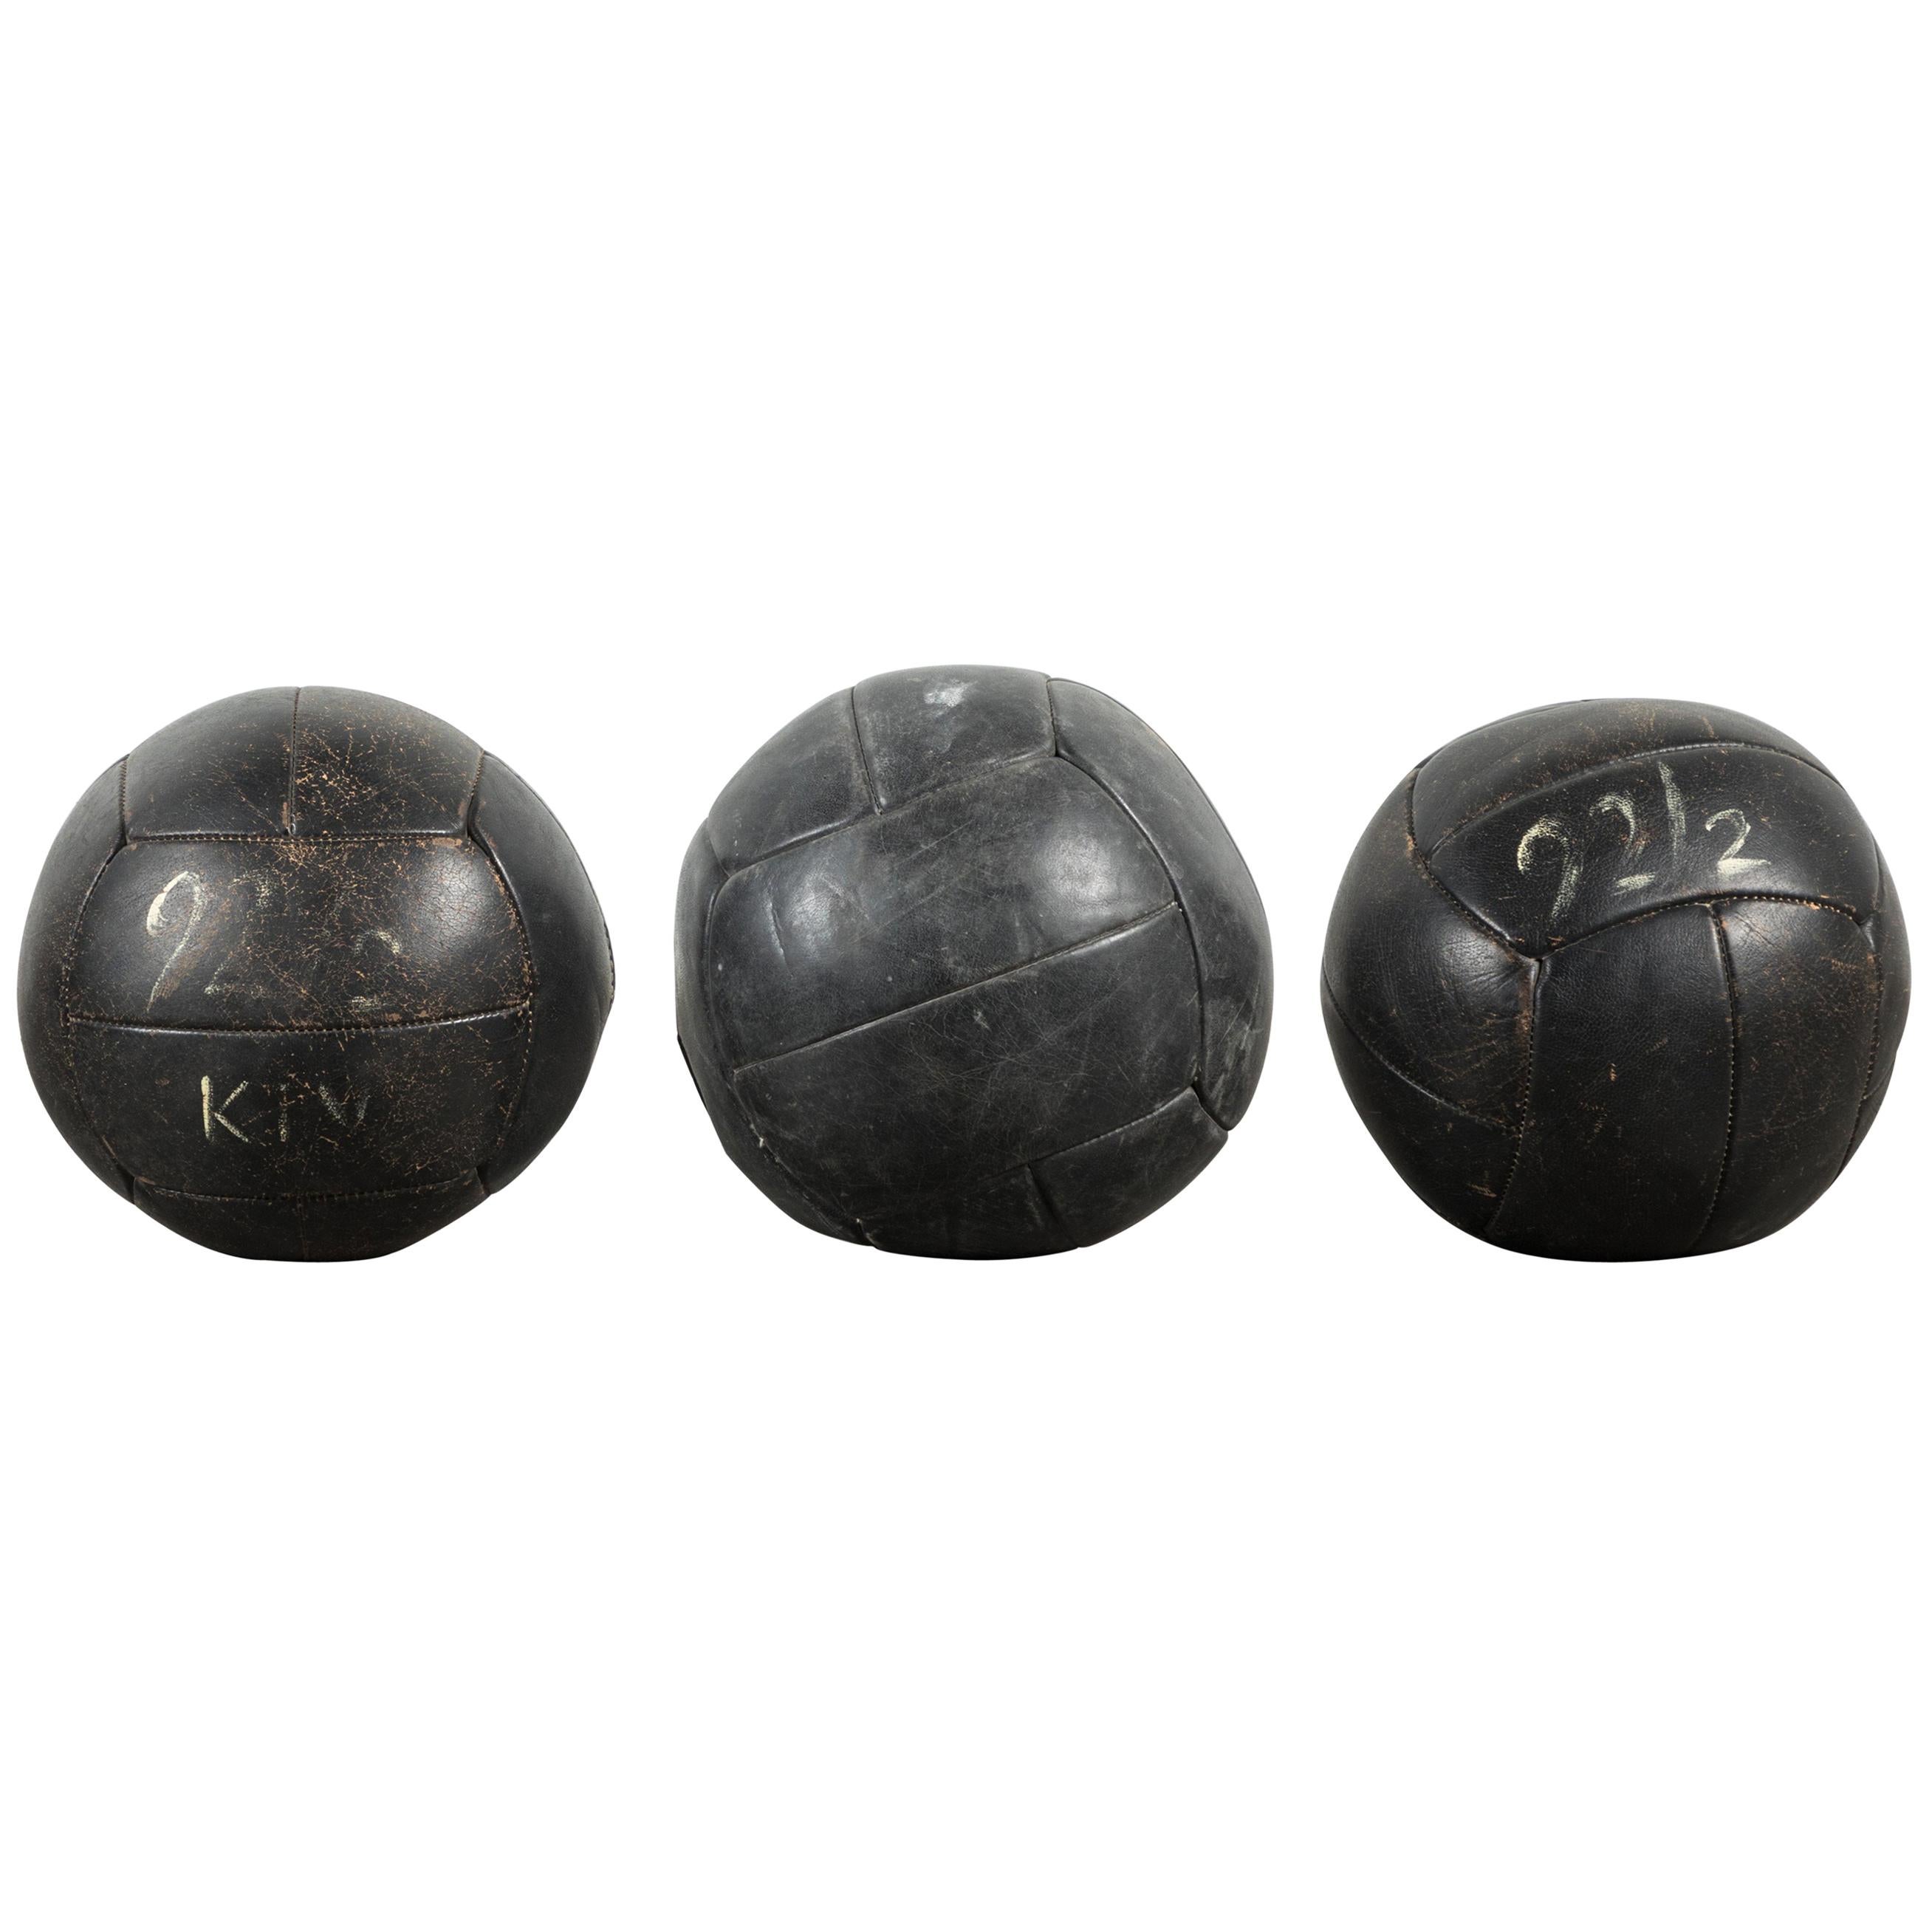 Kollektion von drei schwarzen Medizinballen aus Leder im Vintage-Stil